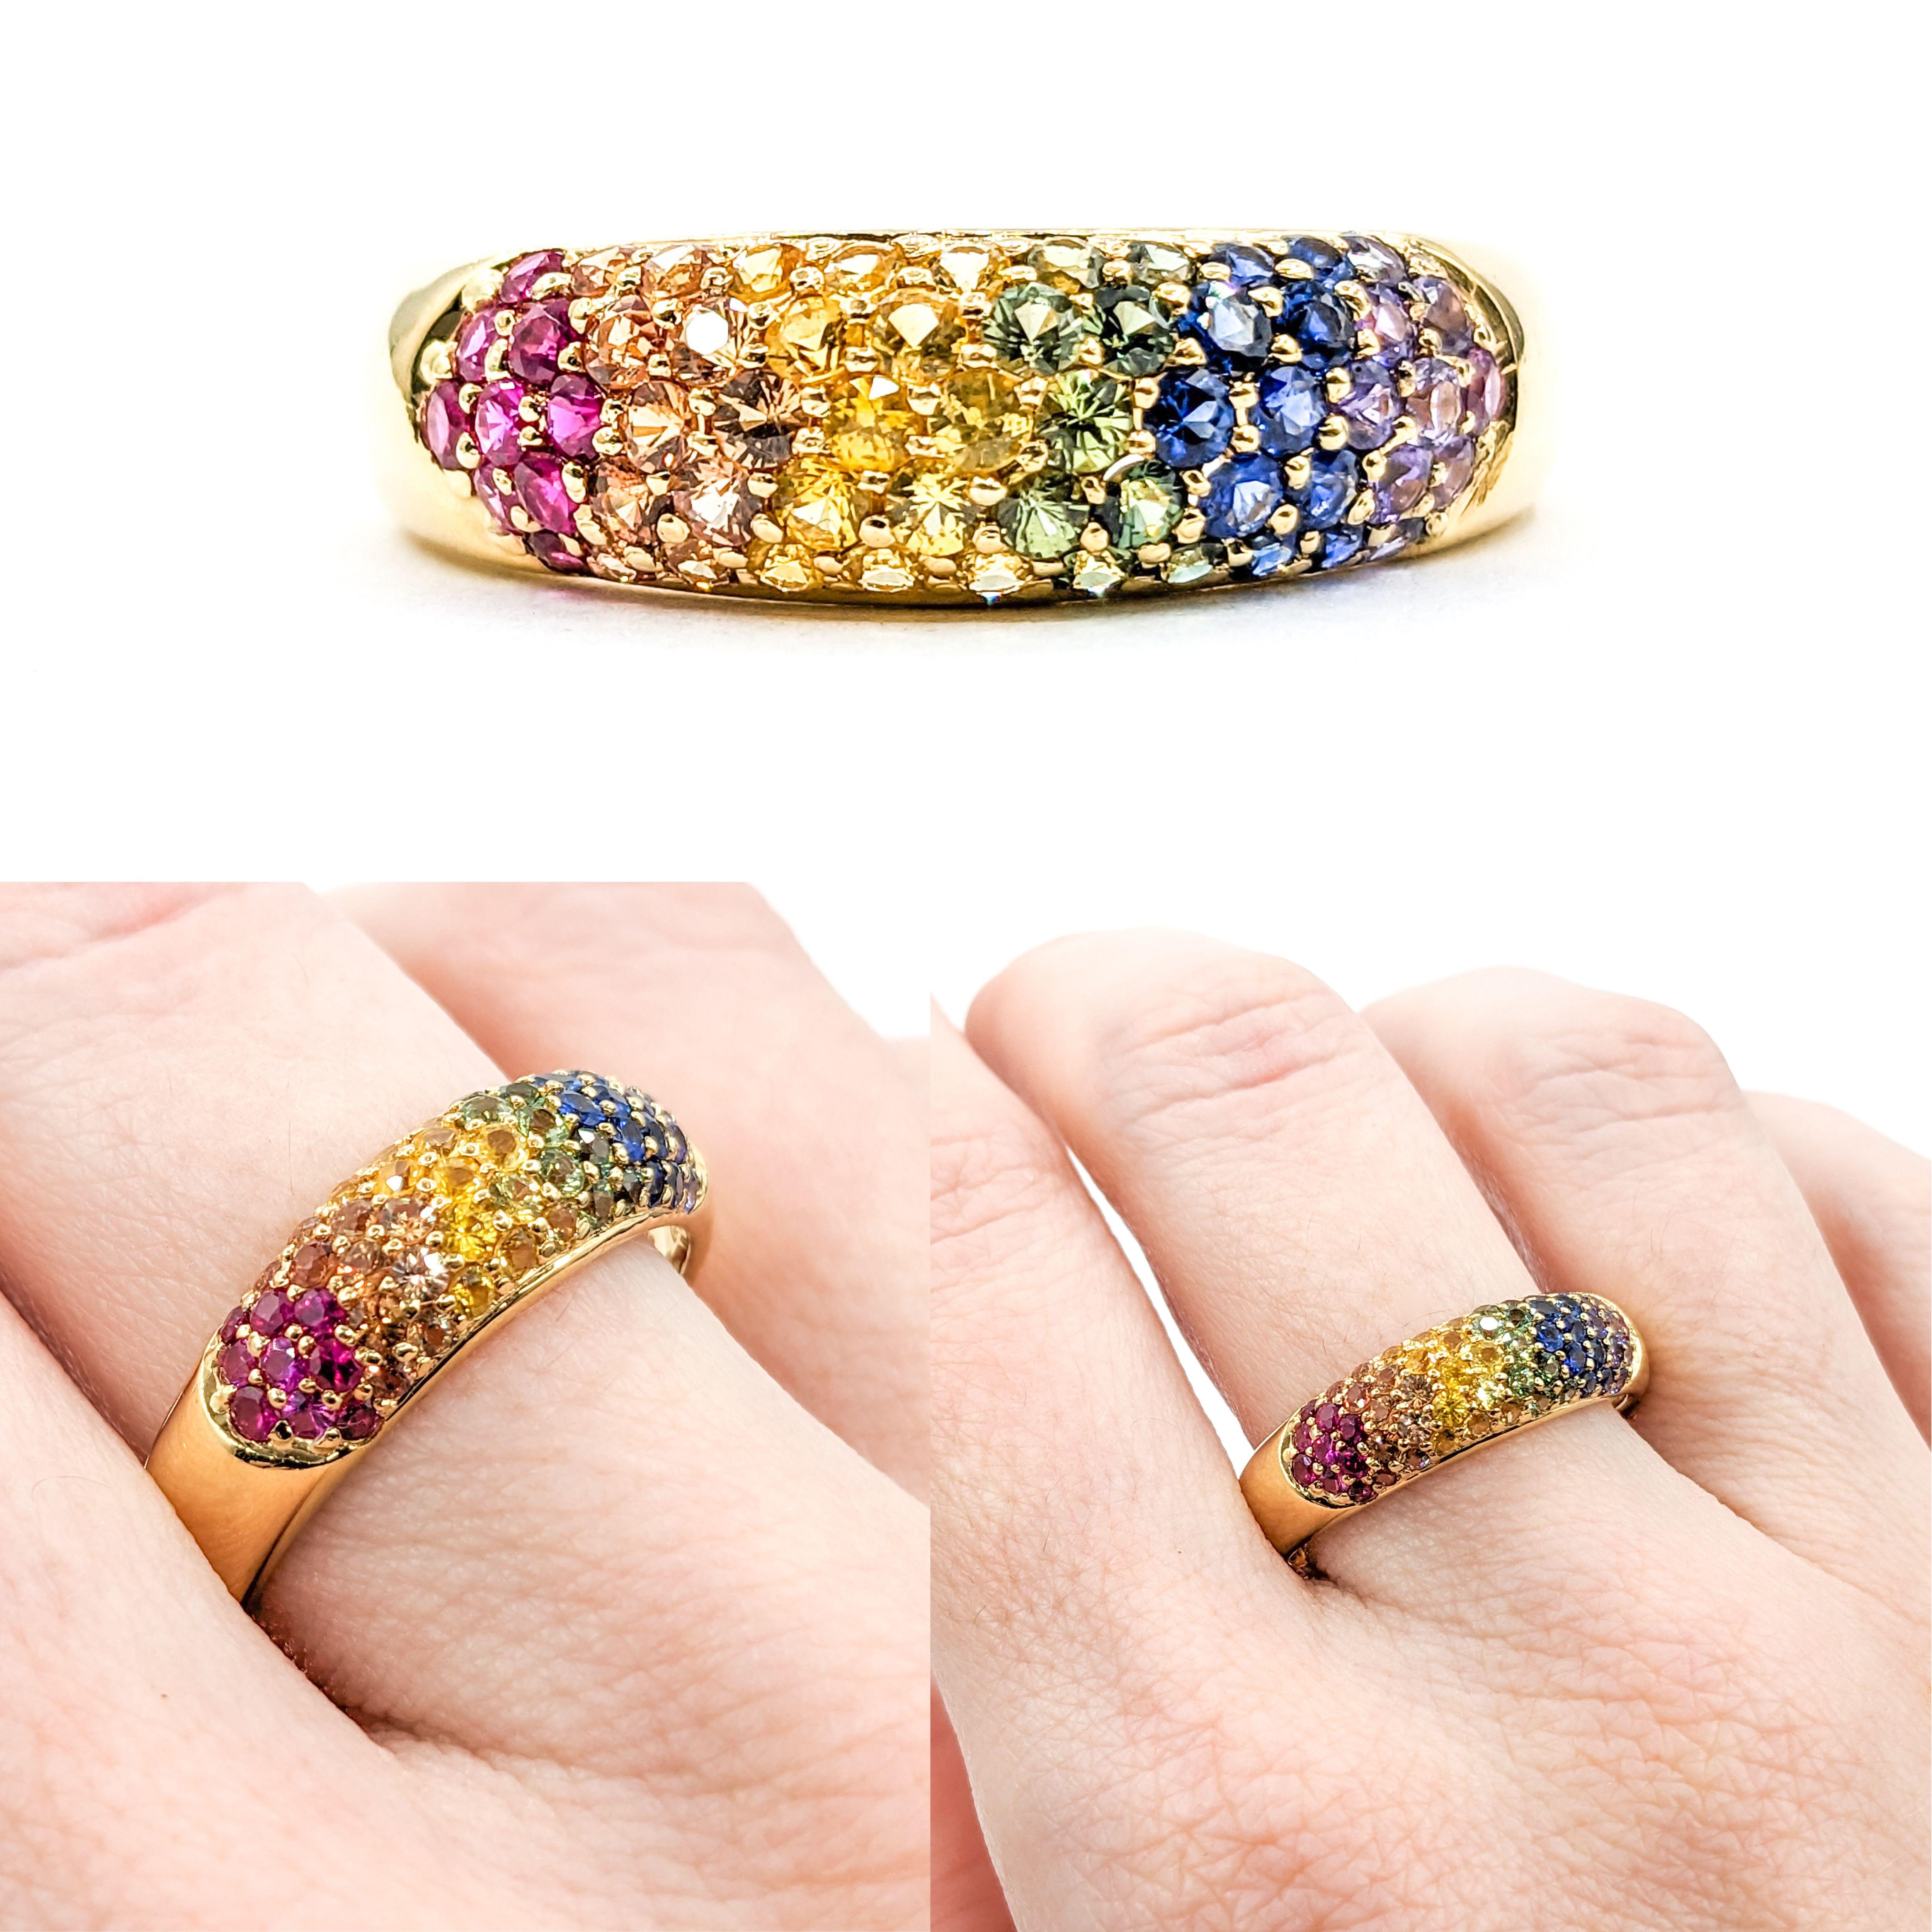 Bunter Regenbogen Multicolor Topas Pave Ring in Gold mit Pavé-Ring

Wir präsentieren unseren exquisiten Multicolor-Topasring, ein Symbol für verspielte Eleganz und farbenfrohen Charme. Dieser wunderschöne Ring ist fachmännisch aus 18 Karat Gelbgold